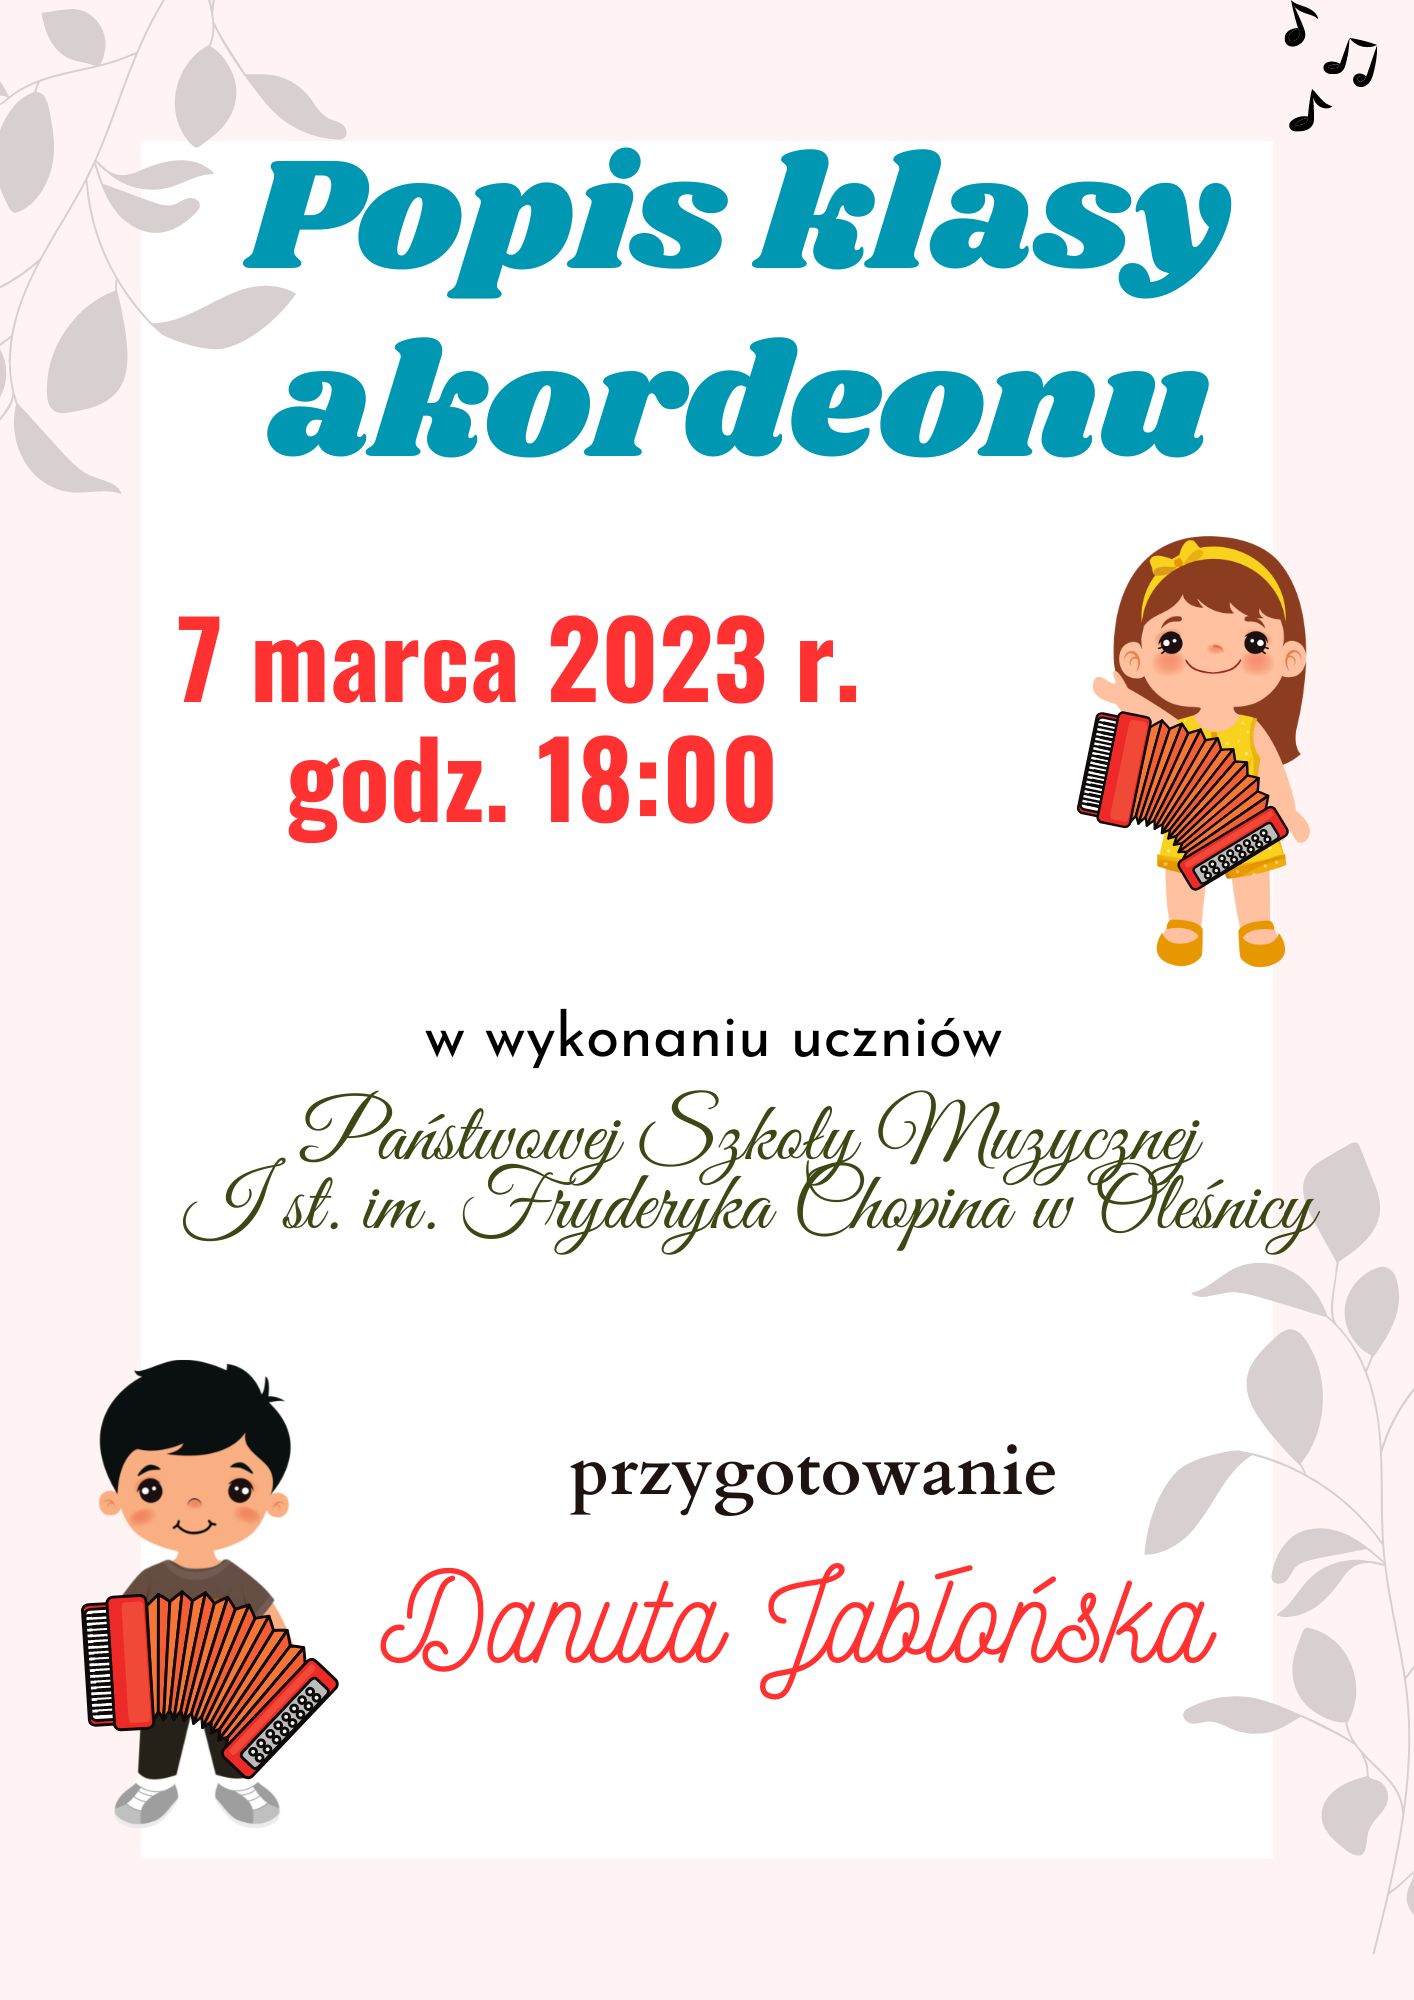 Plakat informujący o popisie klasy akordeonu p. Danuty Jabłońskiej, który odbędzie się 7 marca 2023 r. o godz. 18:00 Na plakacie są grafiki dzieci, które grają na akordeonie. 